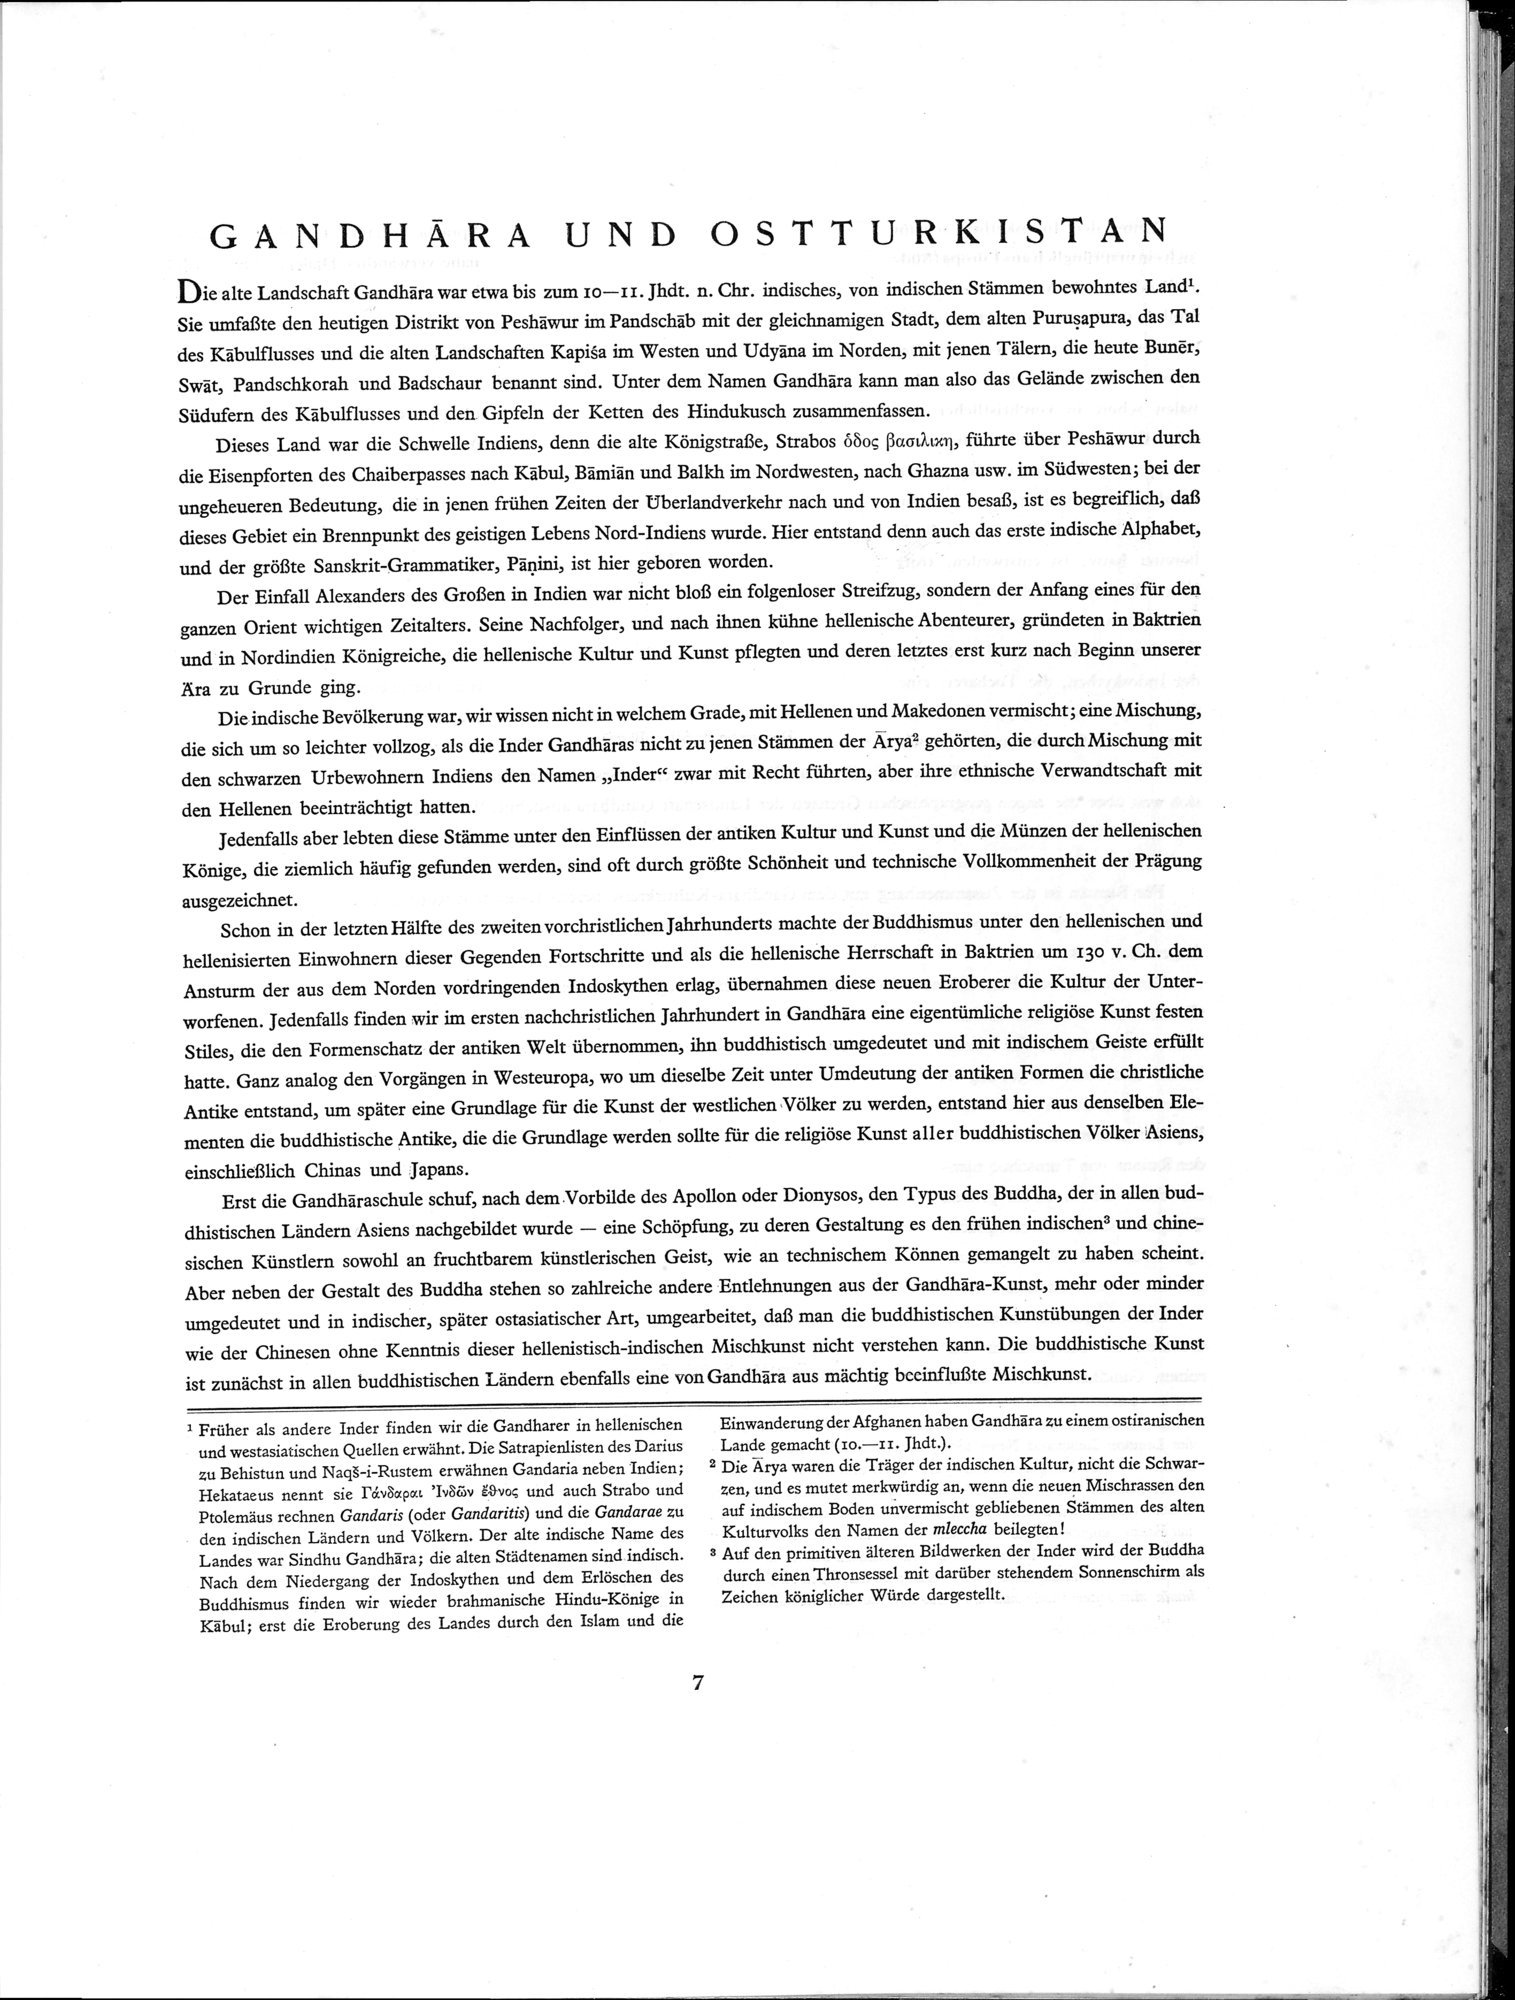 Die Buddhistische Spätantike in Mittelasien : vol.1 / Page 11 (Grayscale High Resolution Image)